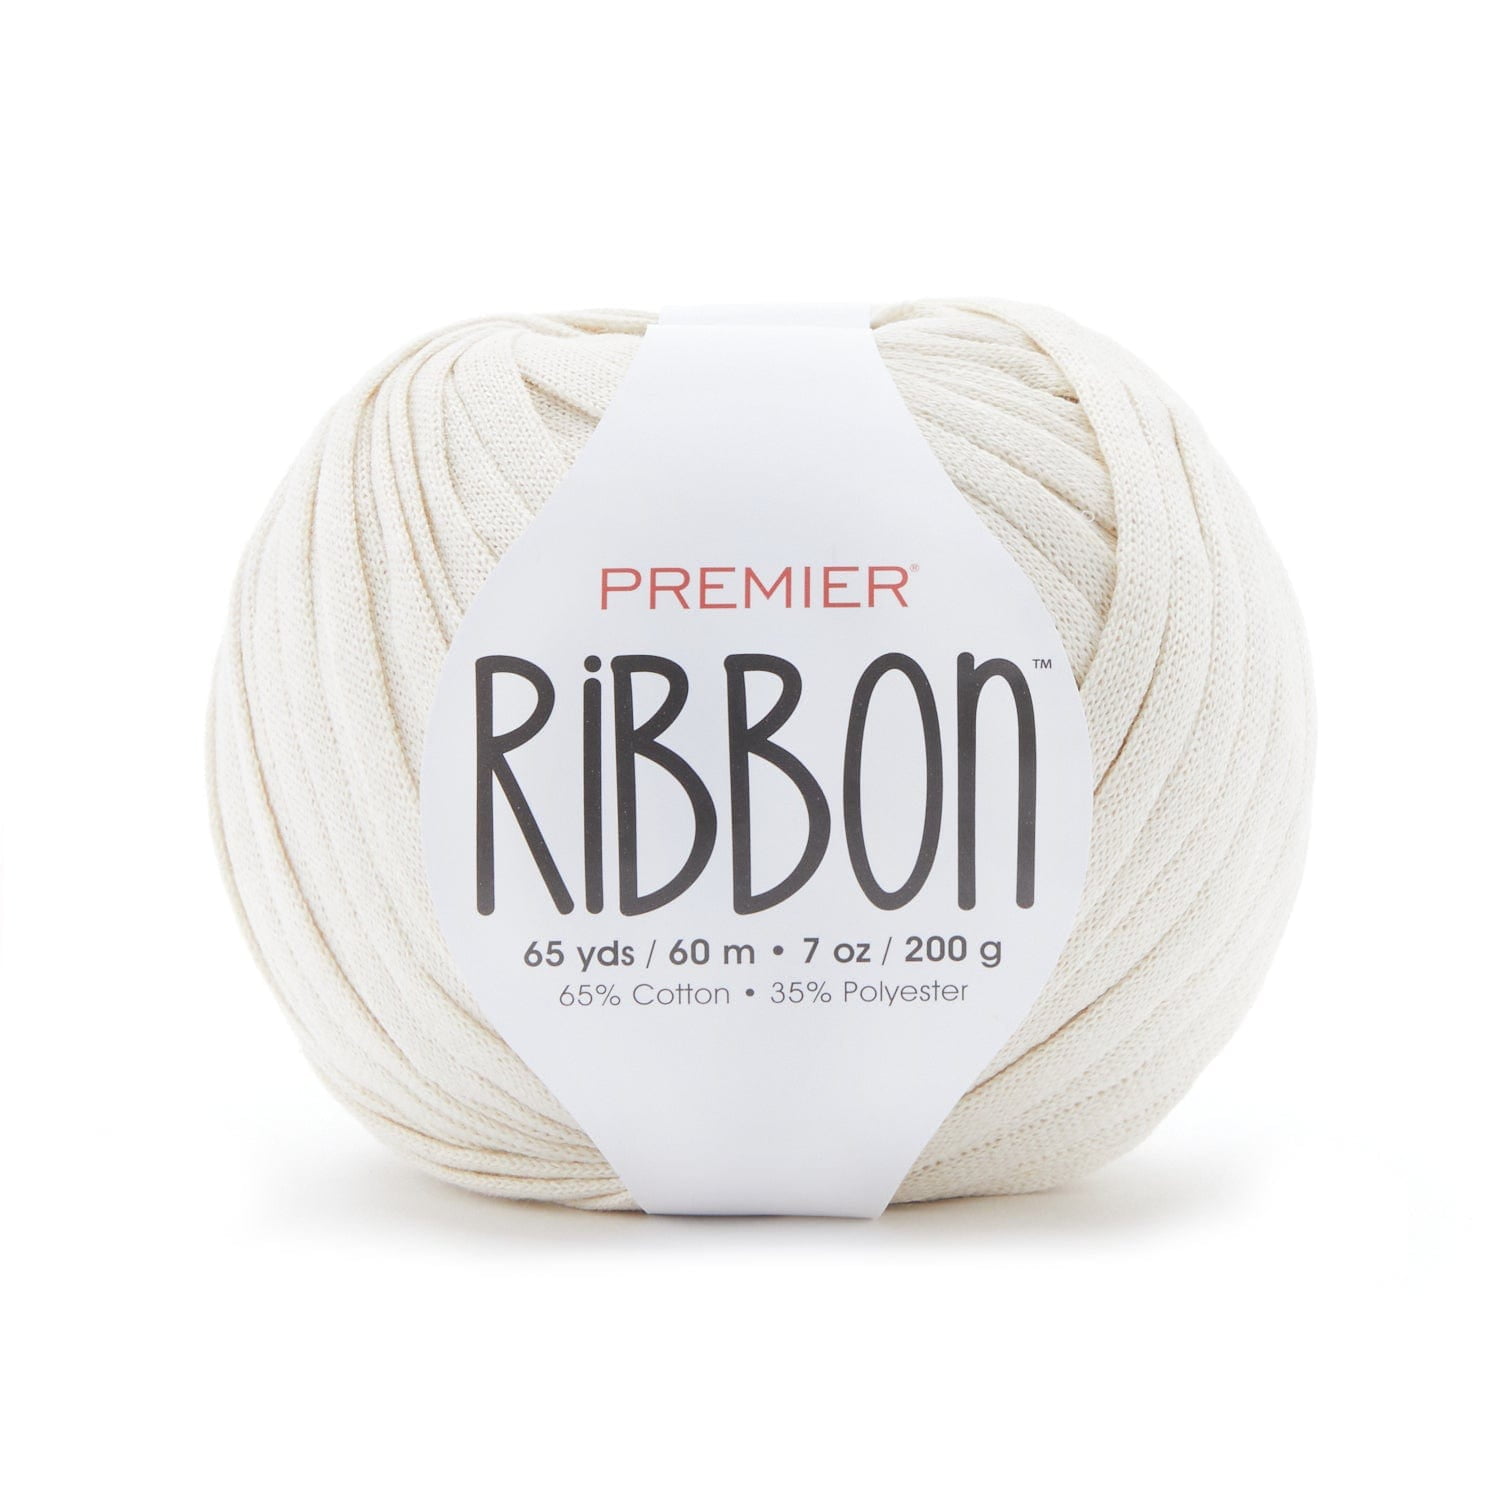 Premier® Ribbon™ 